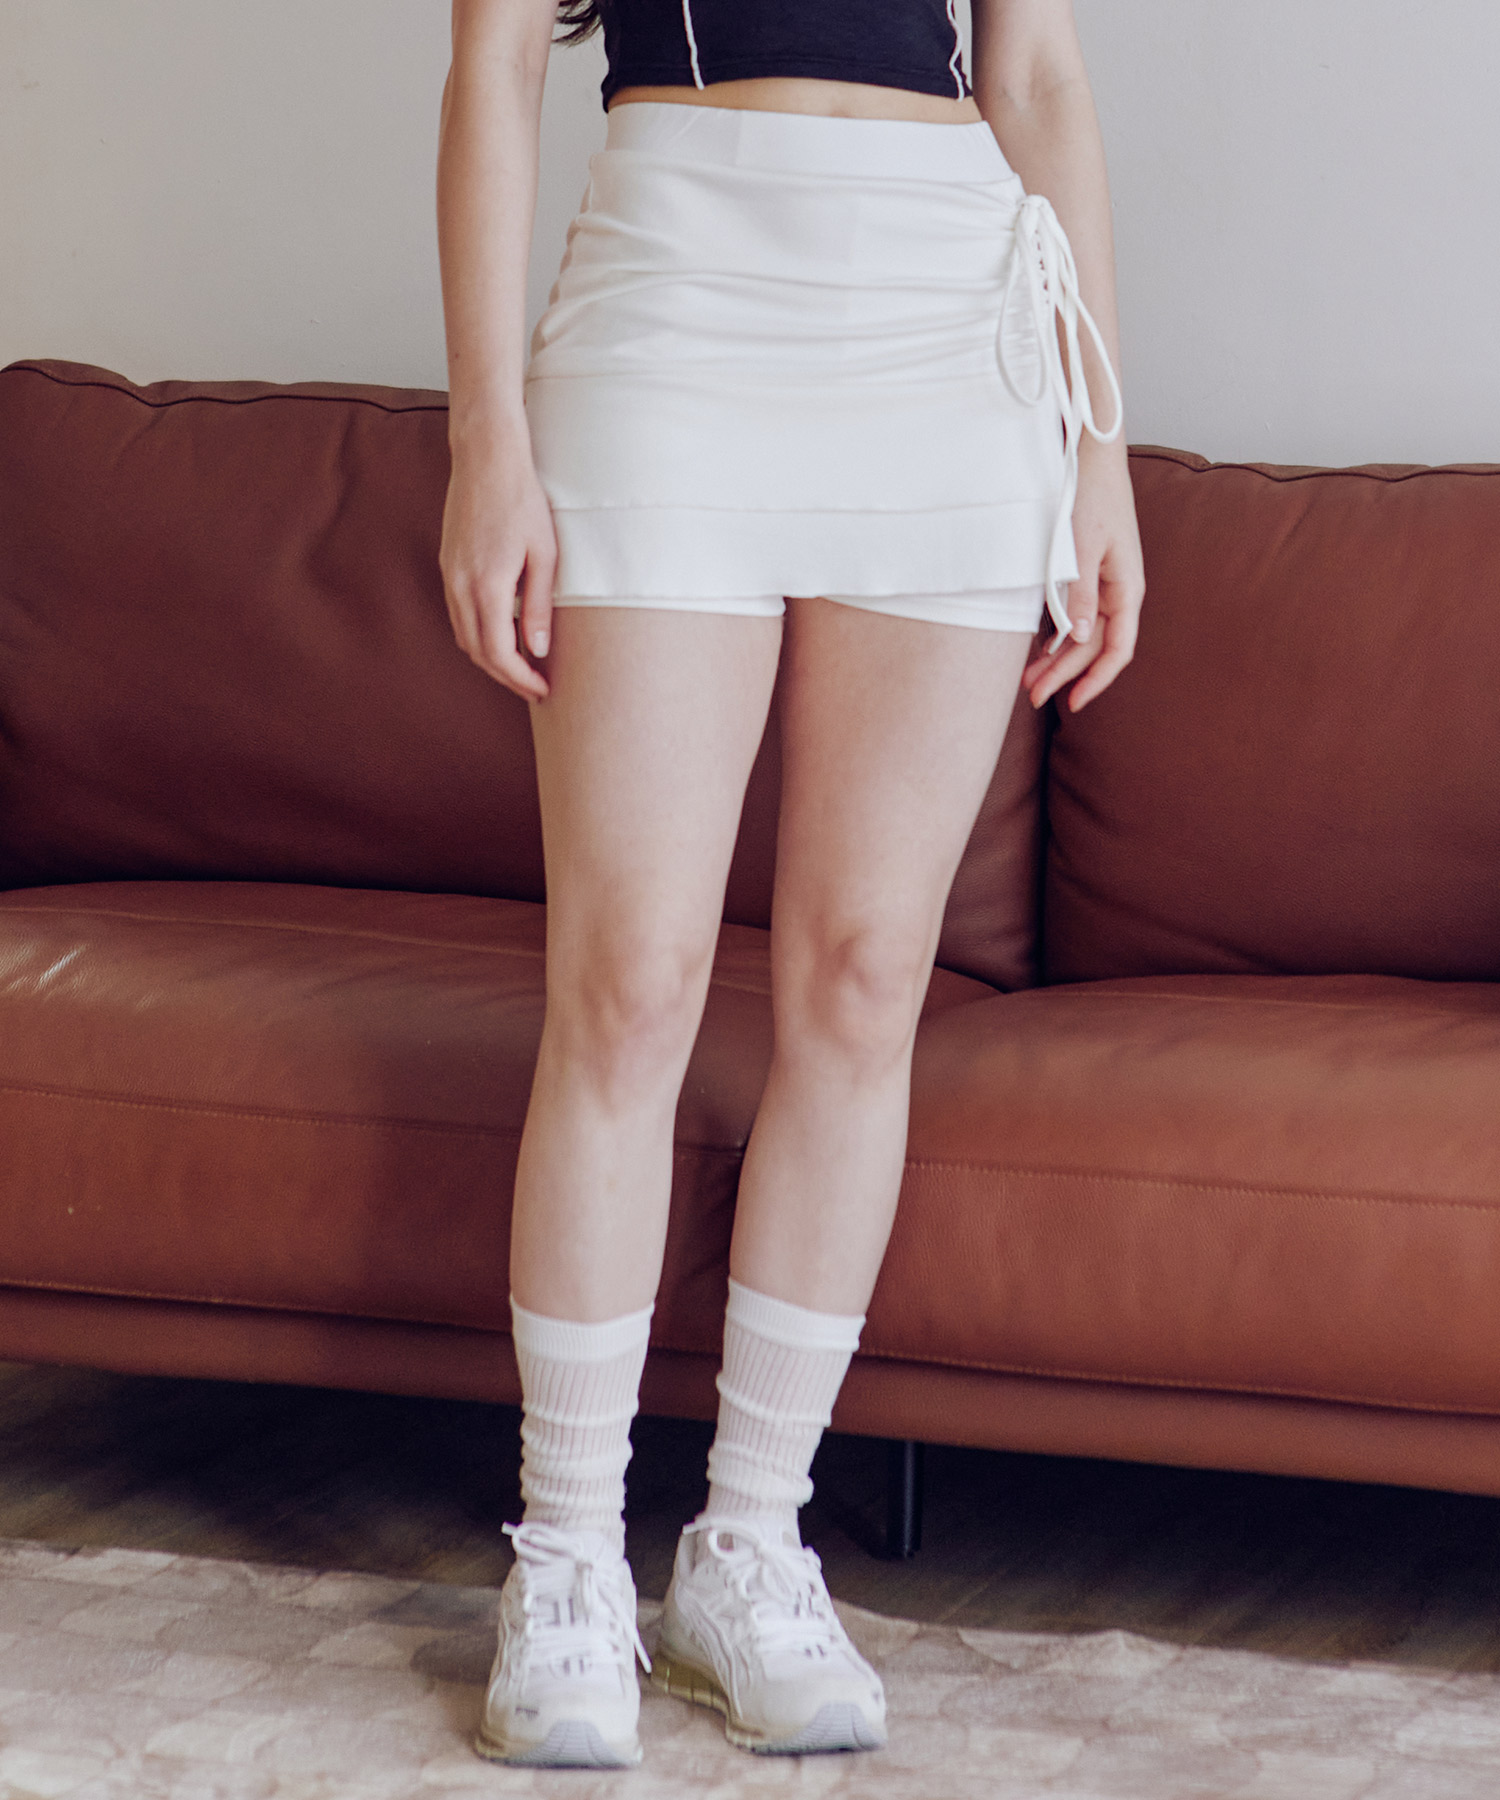 예약 배송 5월 31일_제나 리본 셔링 스커트 팬츠 [WHITE] 김나영이 착용한 제로플래닛